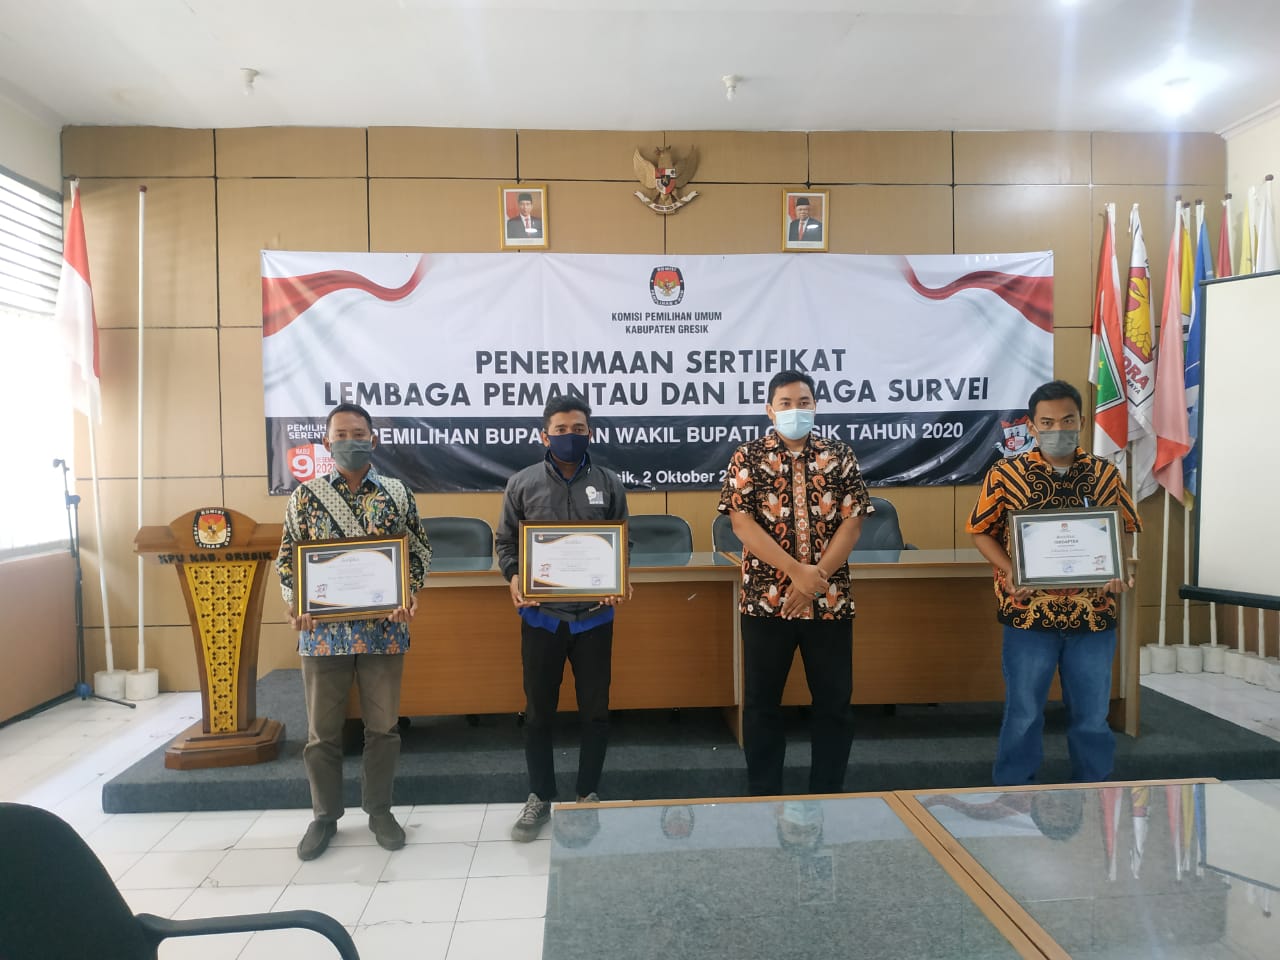 penyerahan sertifikat dipandu langsung oleh Komisioner Divisi SDM dan Parmas KPU Gresik Makmun.